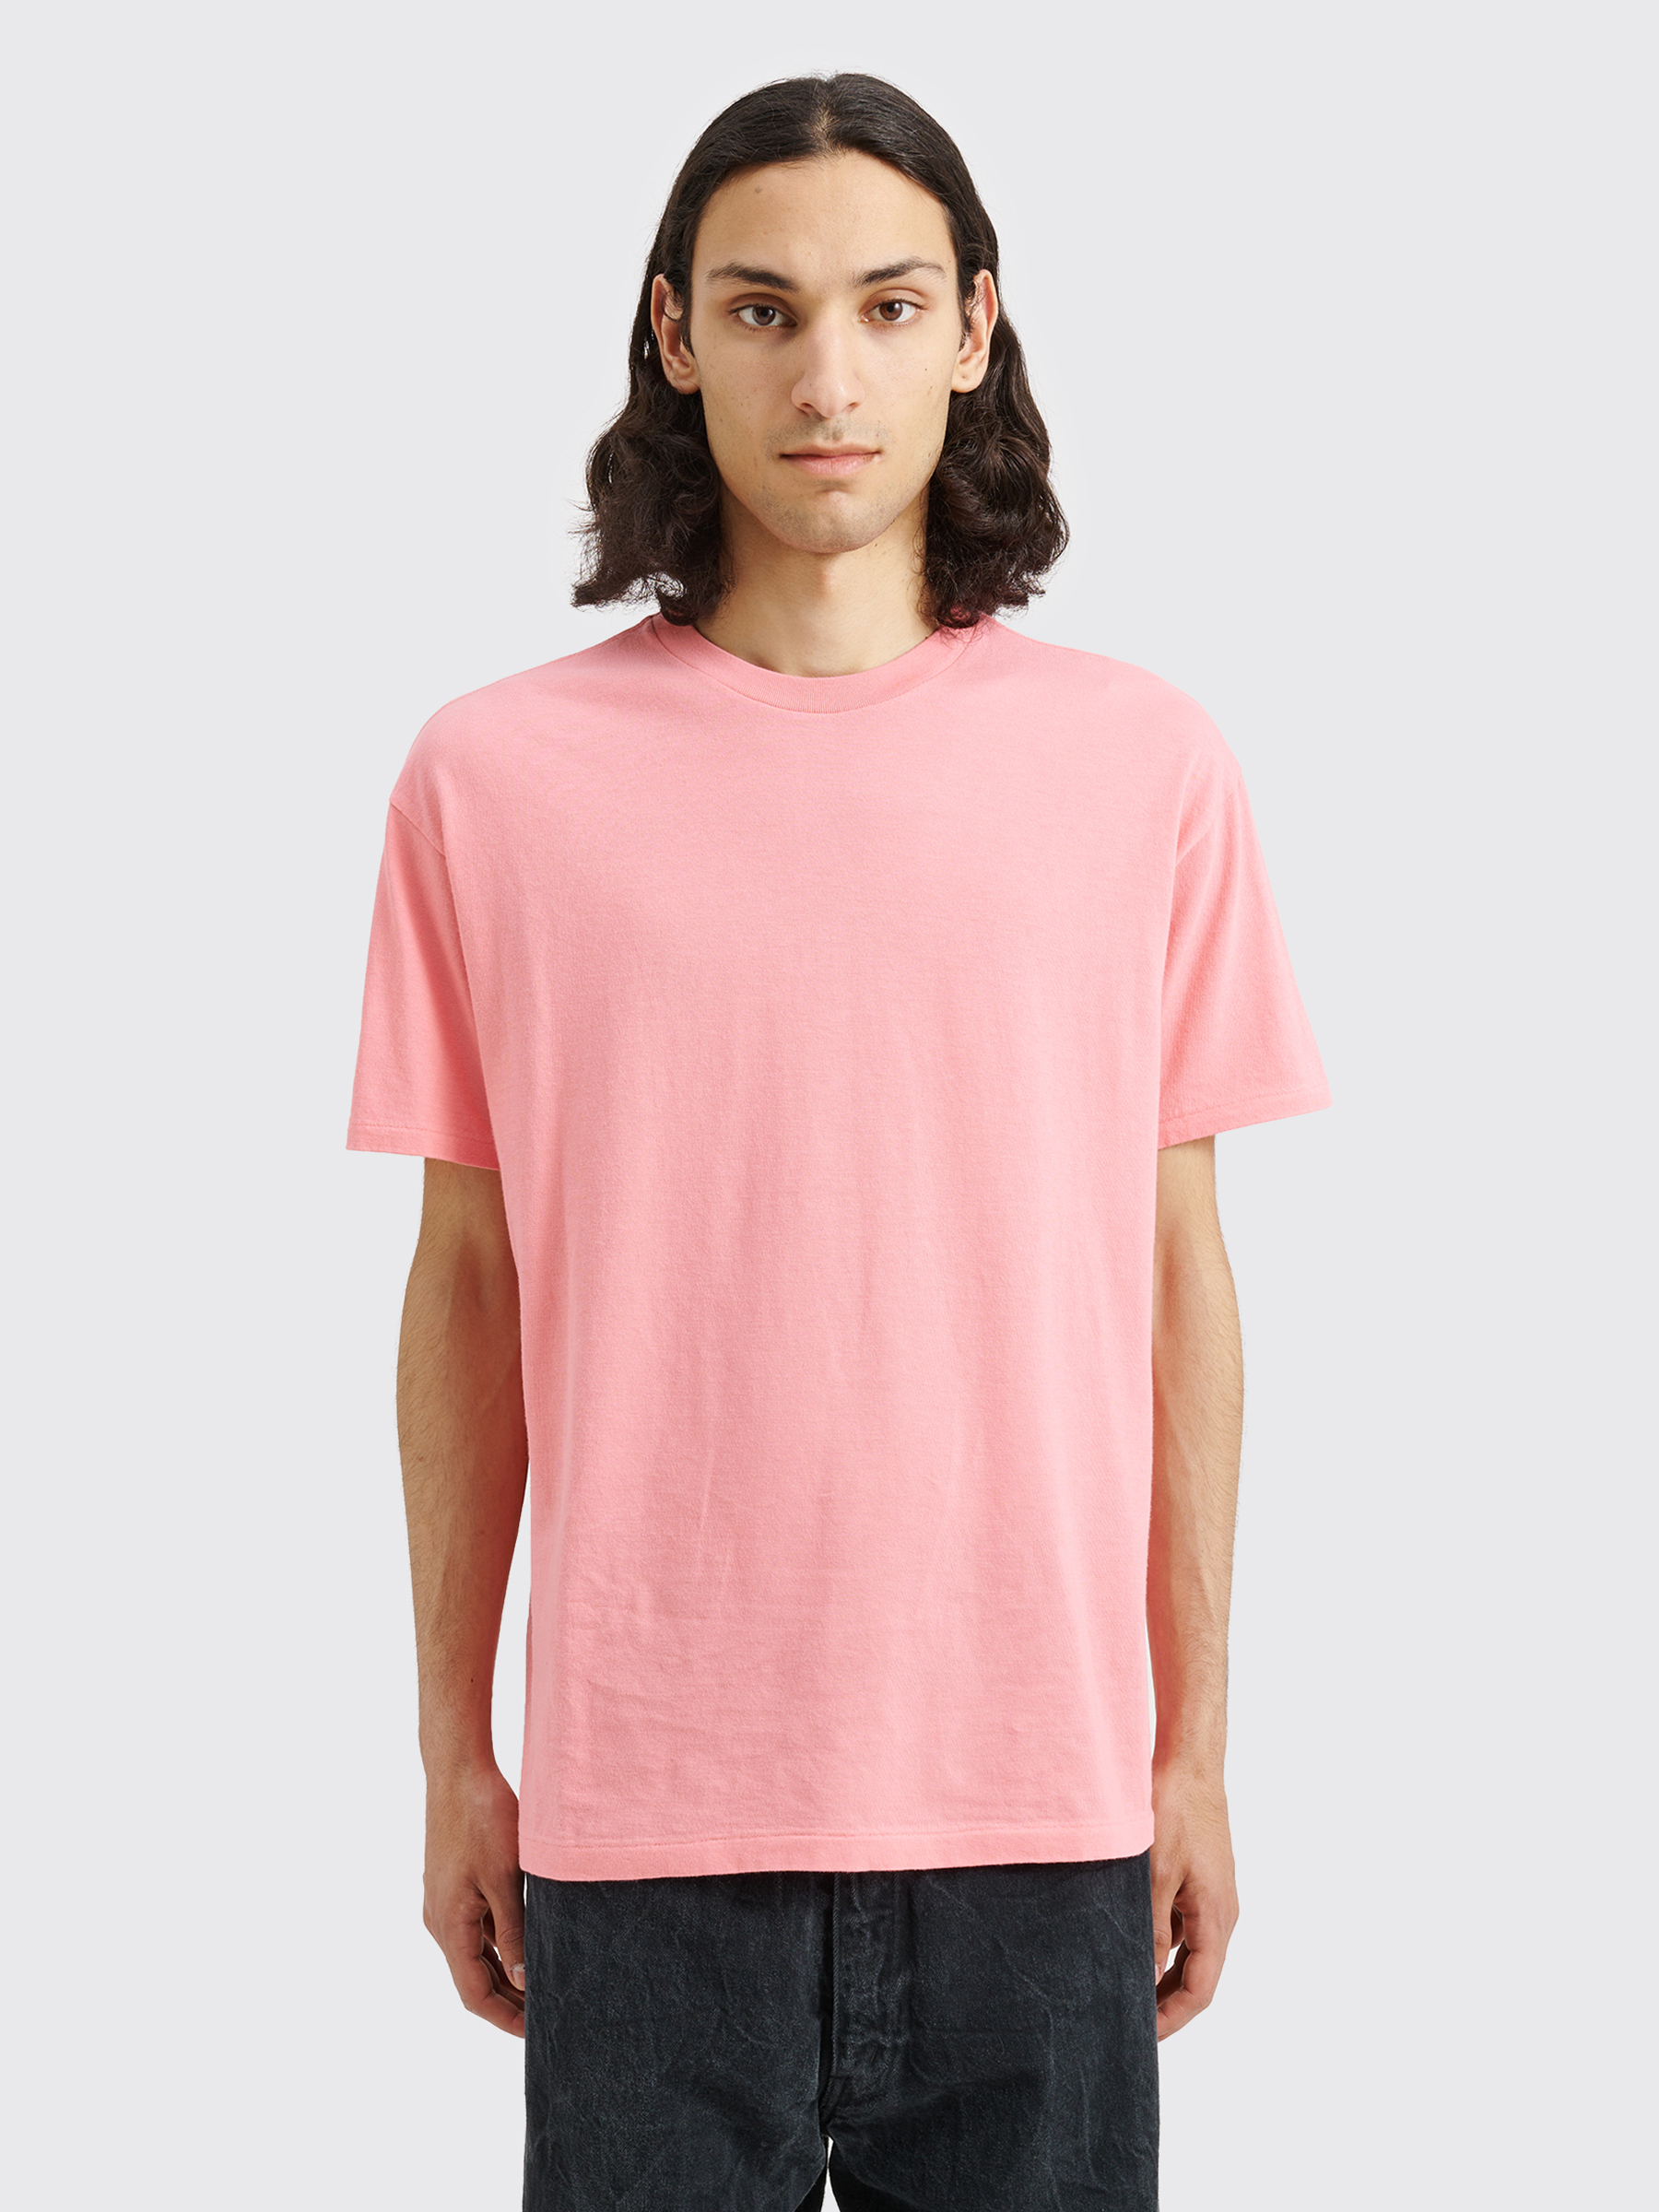 Très Bien - Auralee Seamless Crew Neck T-shirt Pink